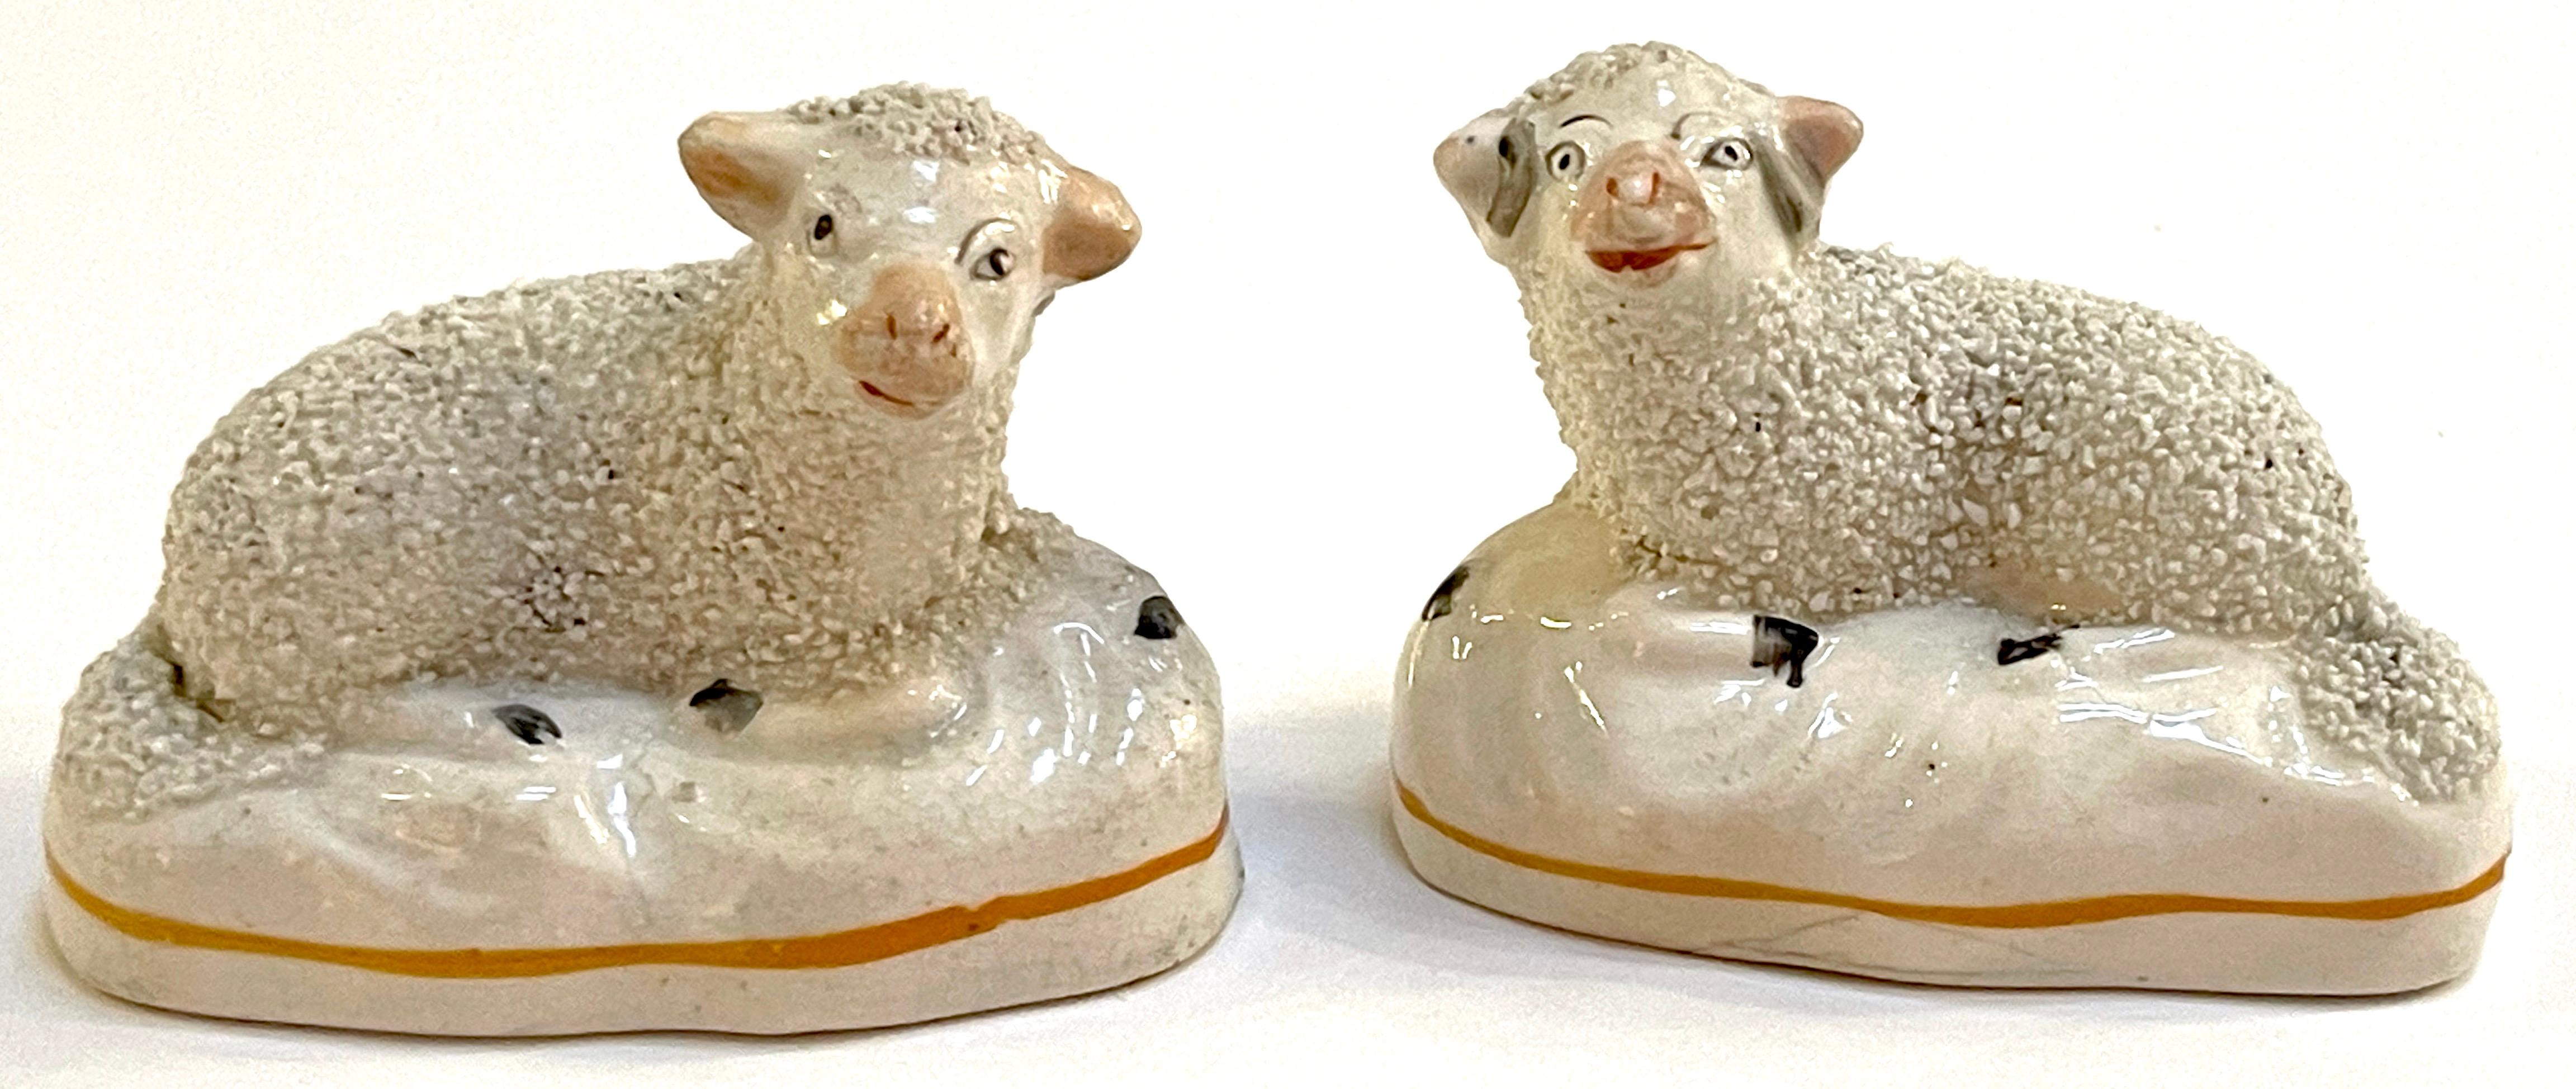 Paire de figures de moutons couchés en Staffordshire du 19e siècle.
Angleterre, vers les années 1860.

Une petite paire de moutons expressifs en poterie du Staffordshire avec des corps texturés. Quelques lignes de tir, structurellement saine.